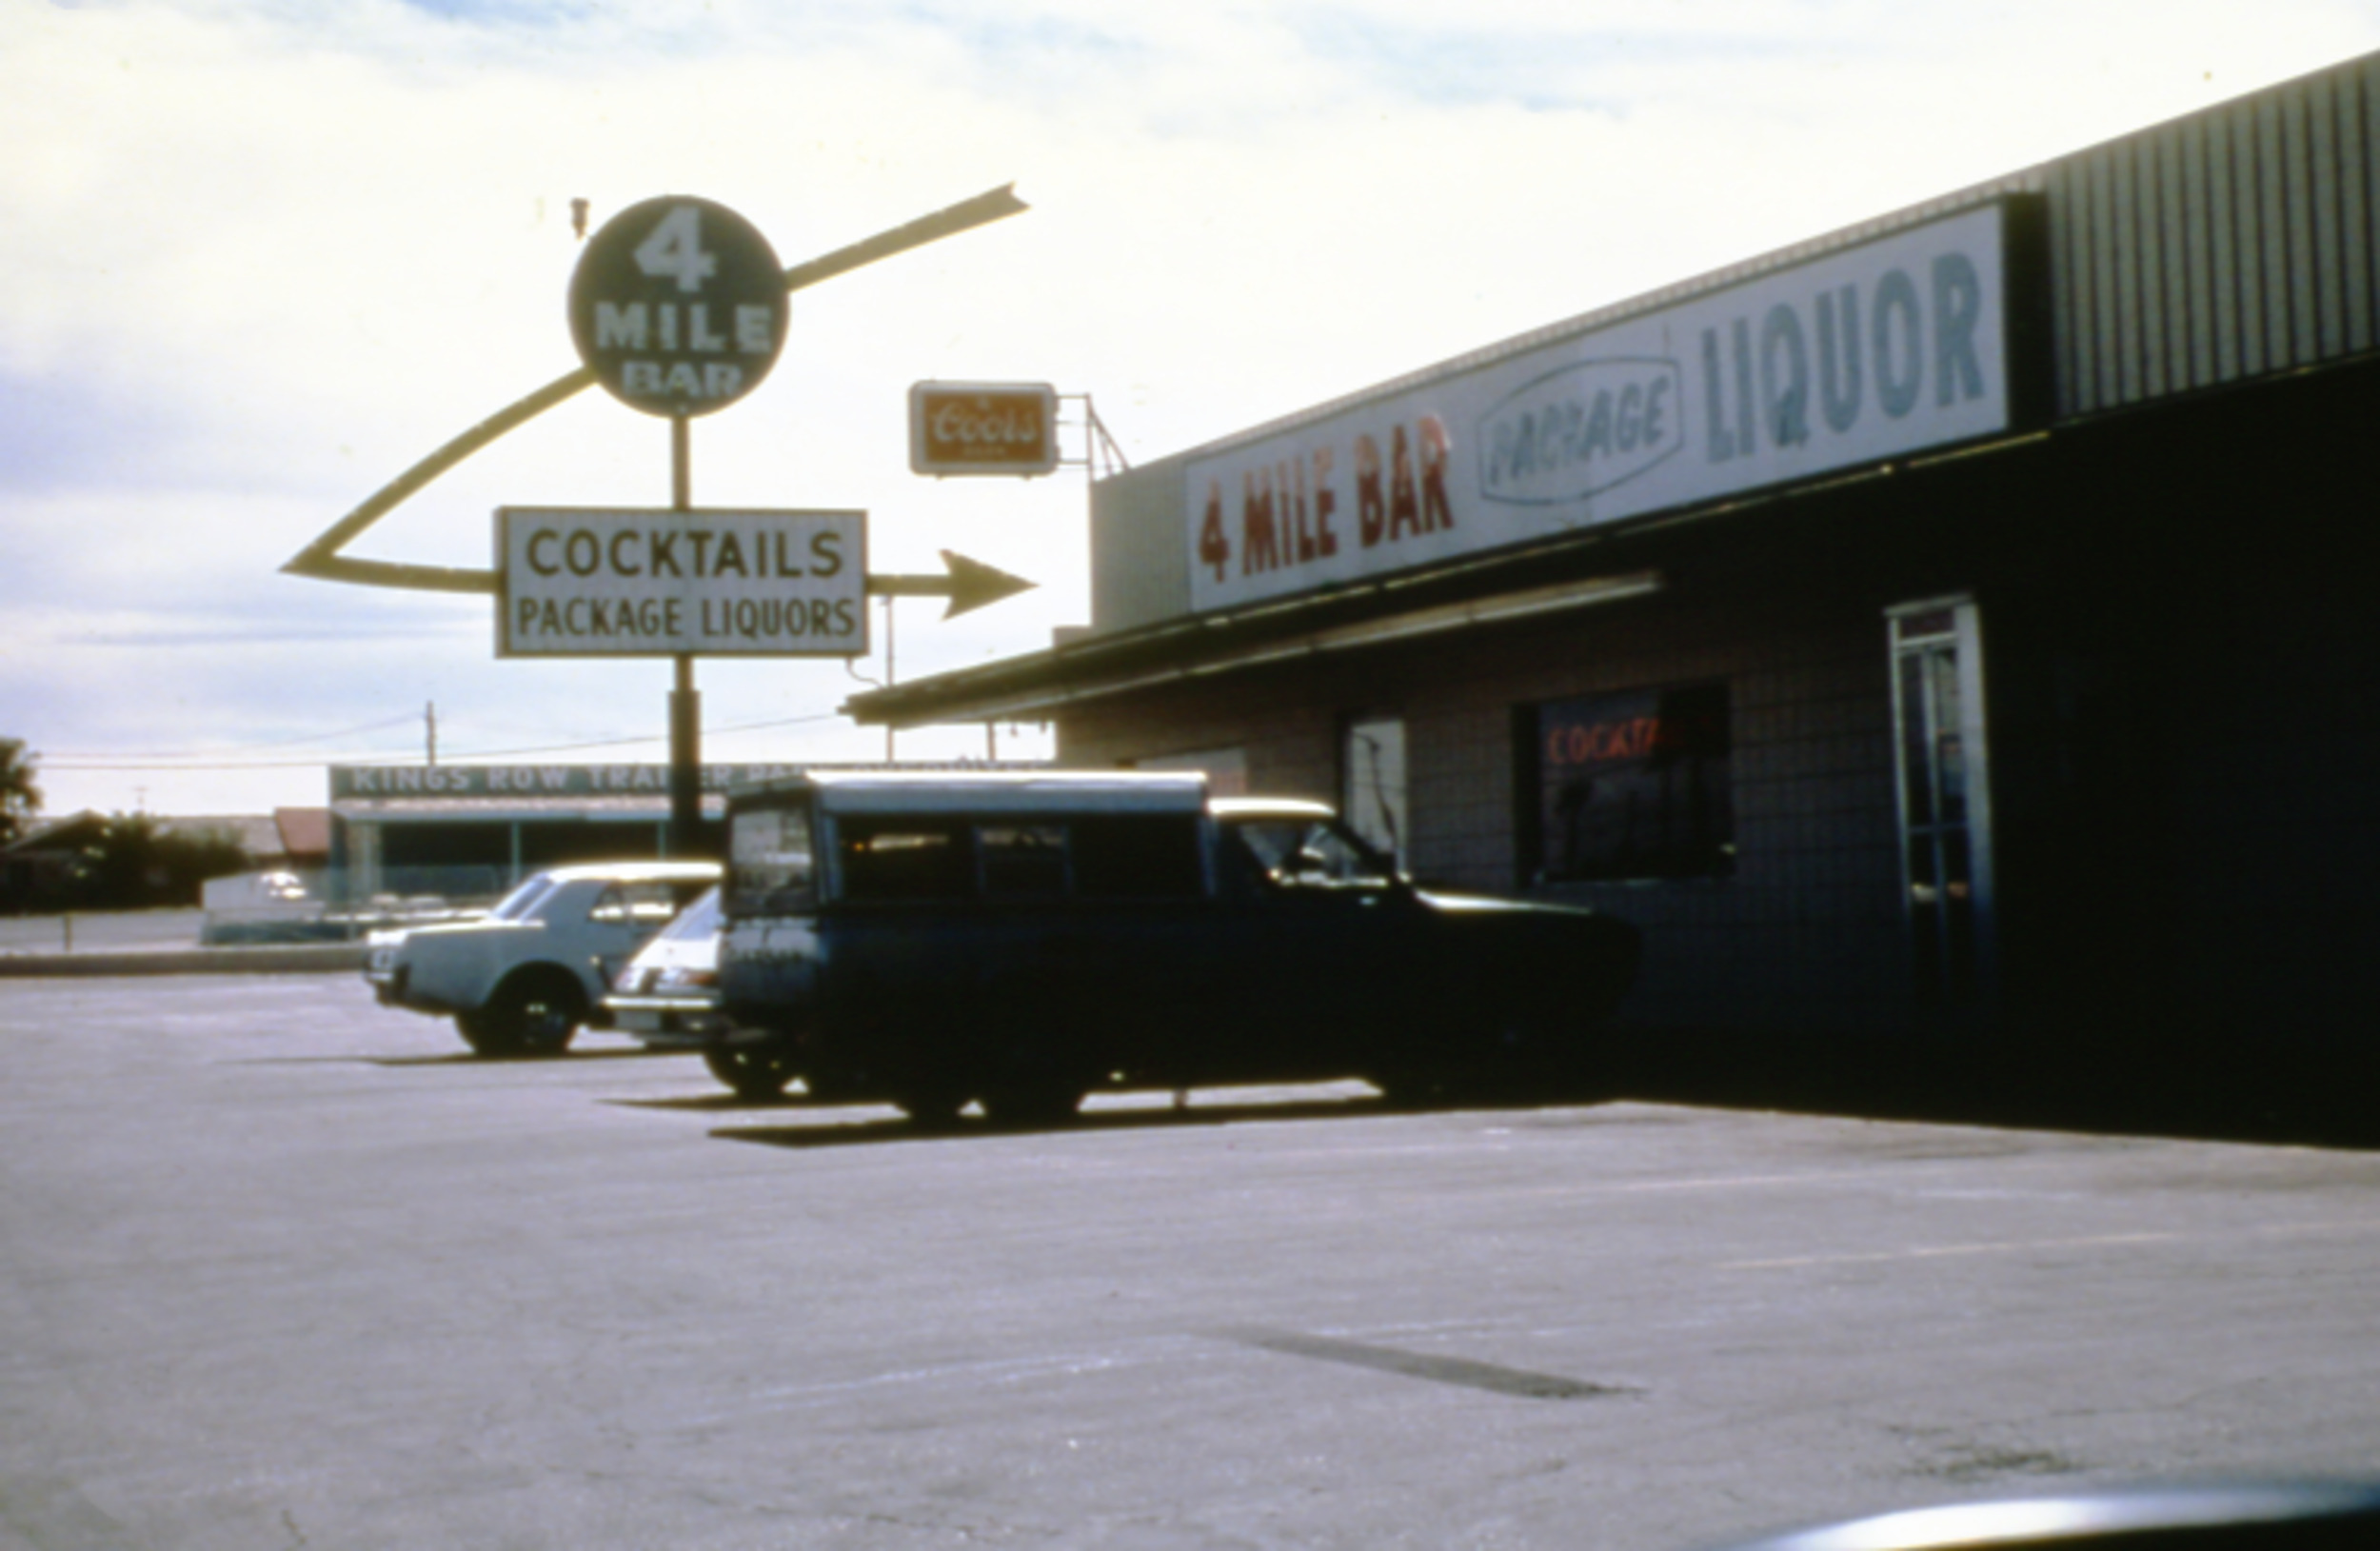 Slide of the 4 Mile Bar, Boulder Highway, Nevada, 1986